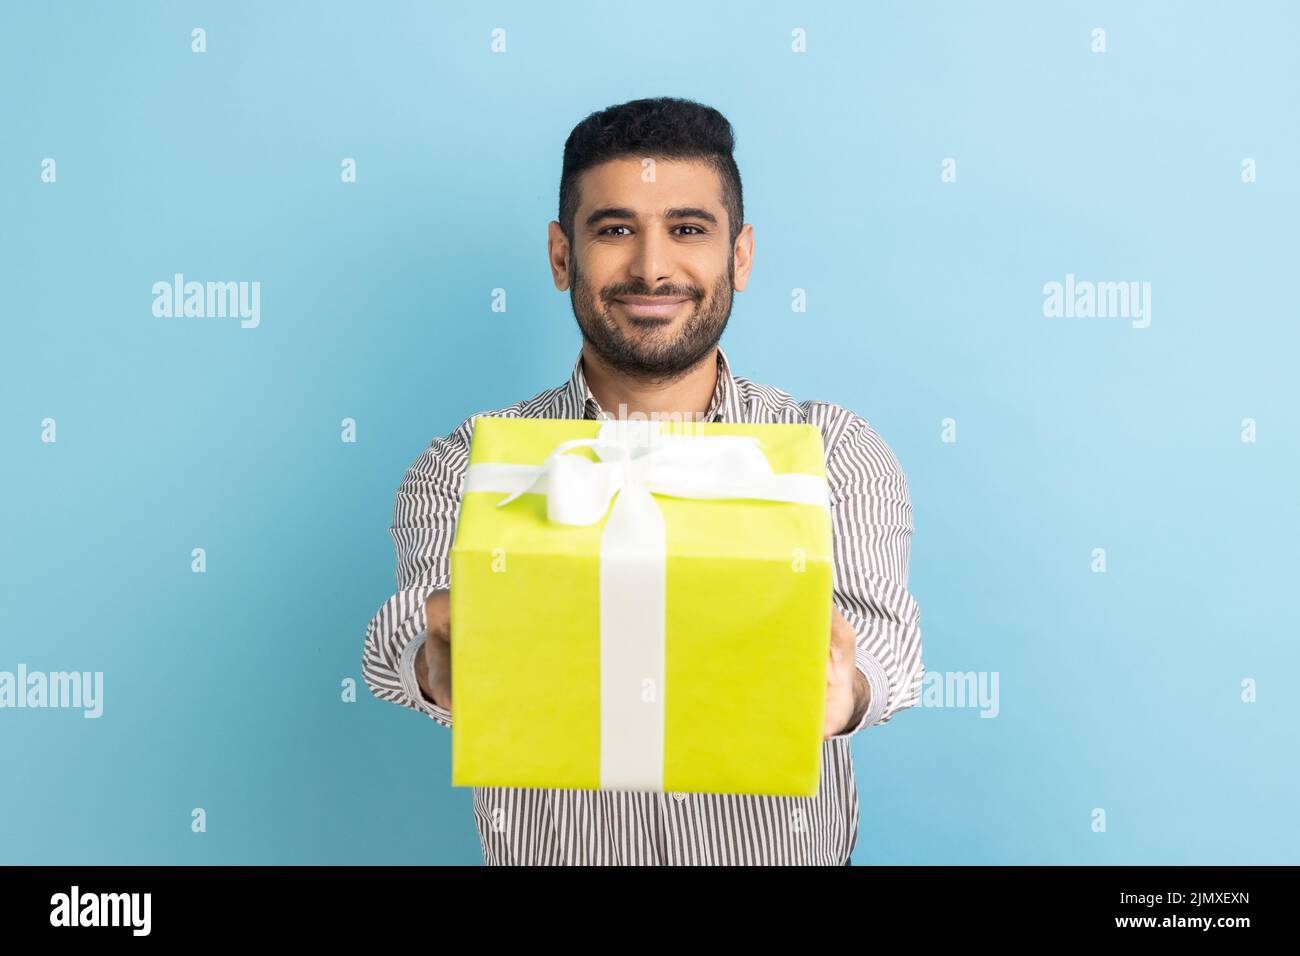 Porträt eines lächelnden bärtigen Geschäftsmannes, der gewickelte gelbe Geschenkschachtel überlässt und die Kamera anlächelt, fröhliche Feiertage in gestreiftem Hemd. Innenaufnahme des Studios isoliert auf blauem Hintergrund. Stockfoto